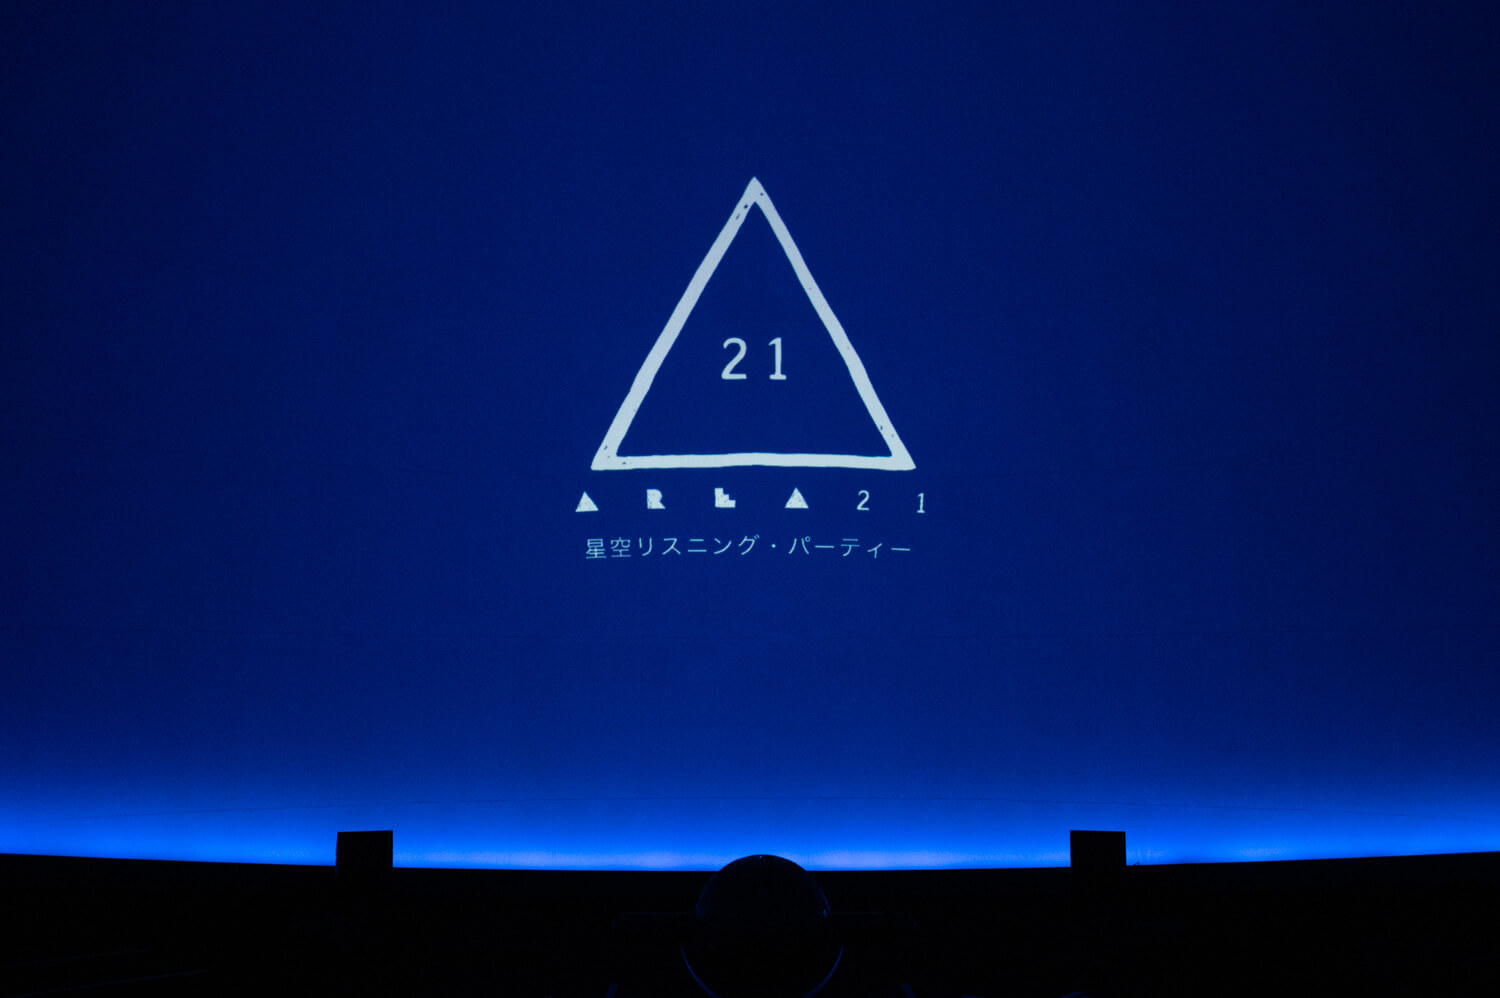 AREA21 上映前投影ロゴ＆イベントタイトル